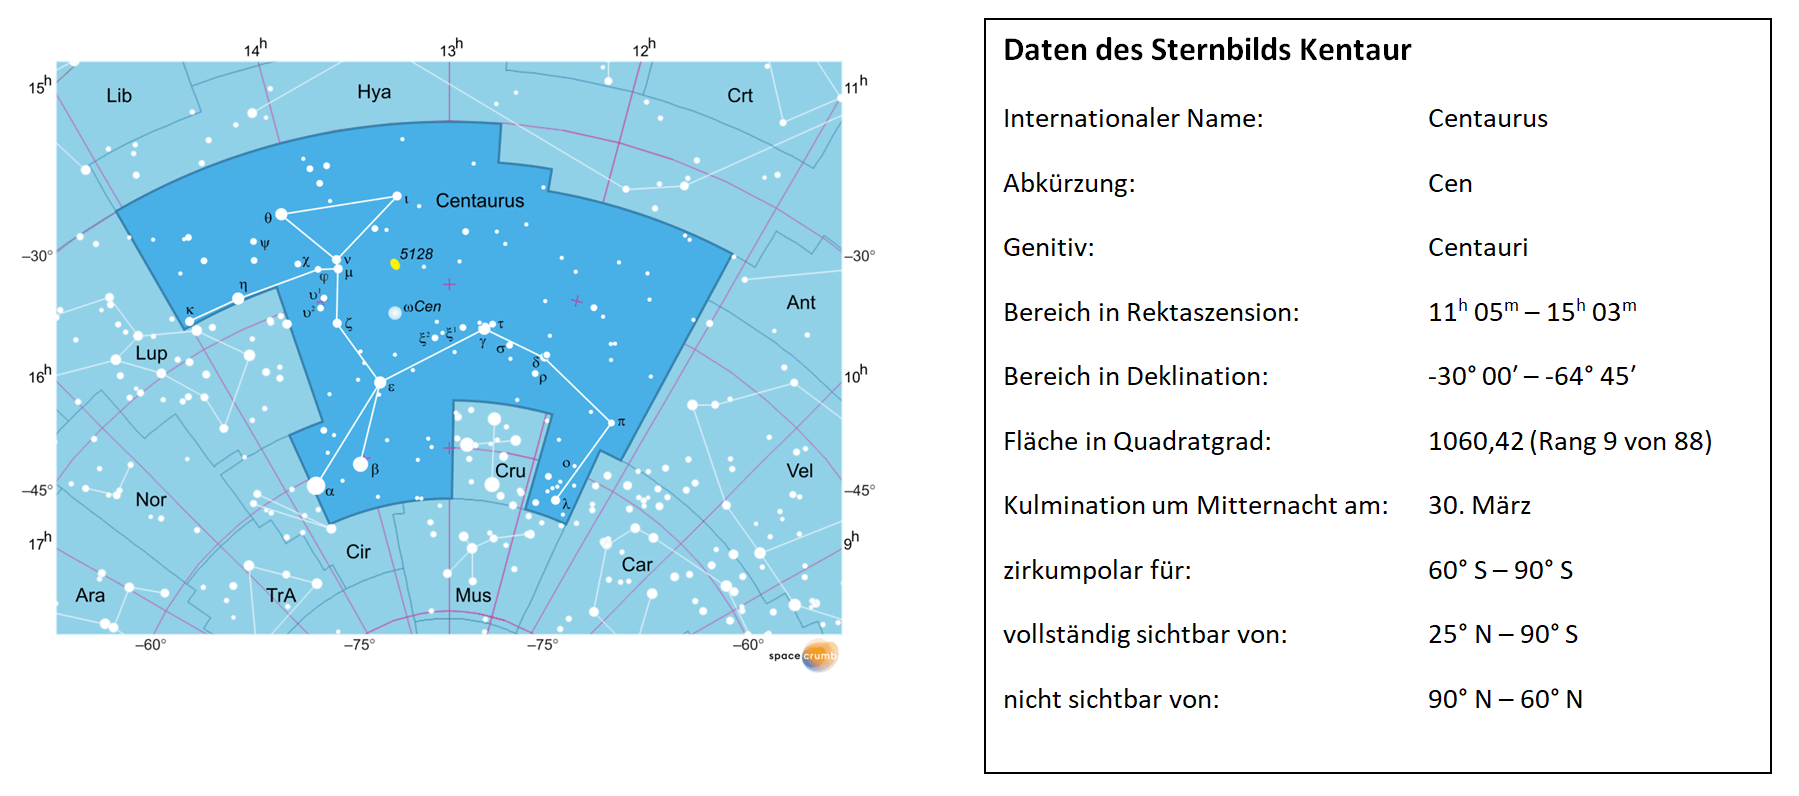 Links zeigt eine mit Koordinaten versehene Karte eines Himmelsausschnitts weiße Sterne auf hellblauem Hintergrund. Die Fläche, die das Sternbild Kentaur einnimmt, ist dunkelblau hervorgehoben. Eine Tabelle rechts gibt wichtige Daten des Sternbilds Kentaur an.